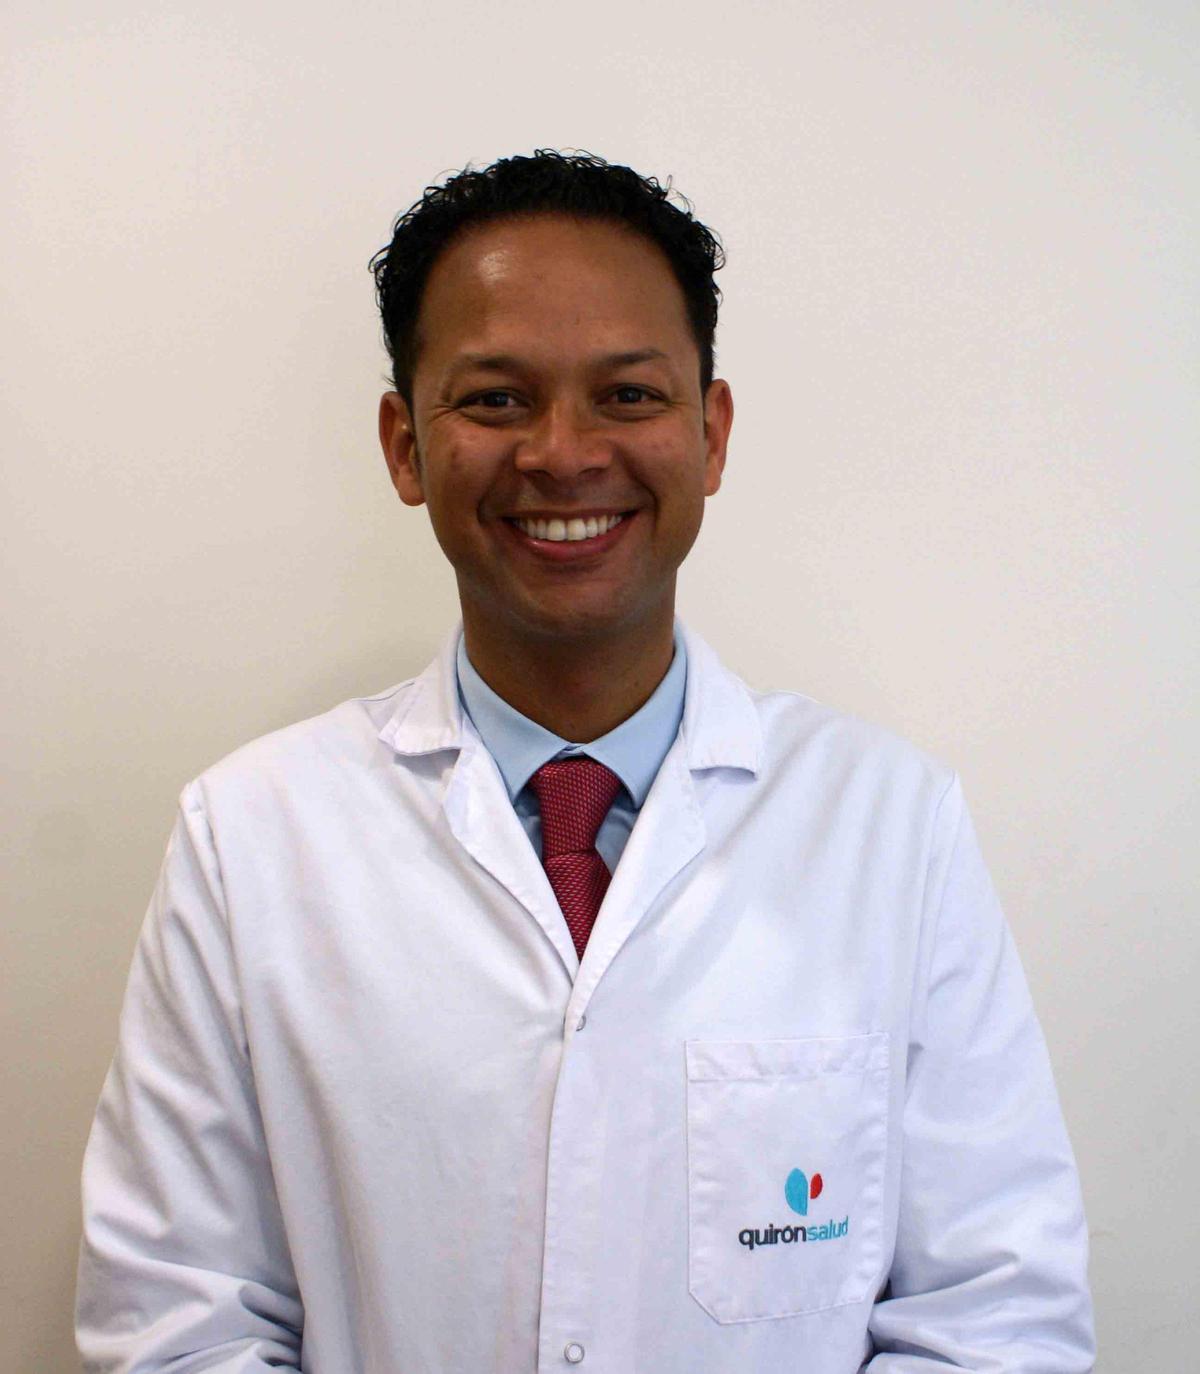 El doctor Luis Carlos Saldarriaga Ospino.